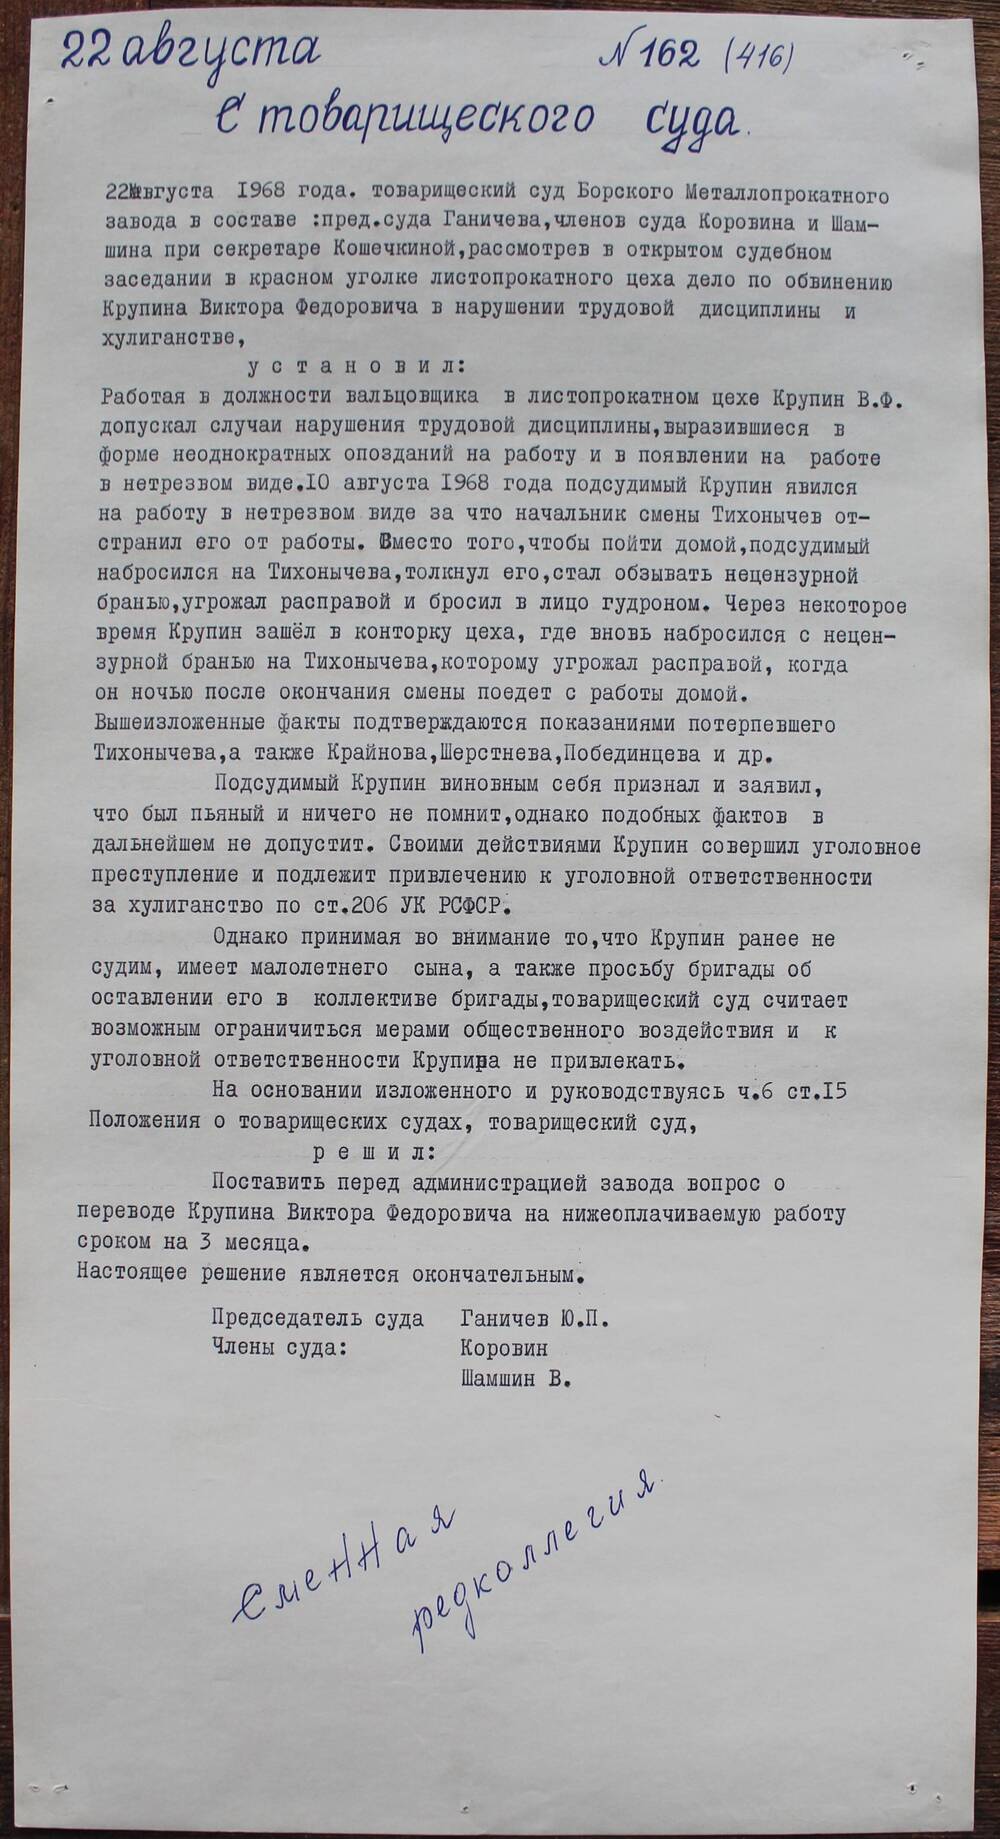 Стенгазета завода Прокатчик 1968 г.